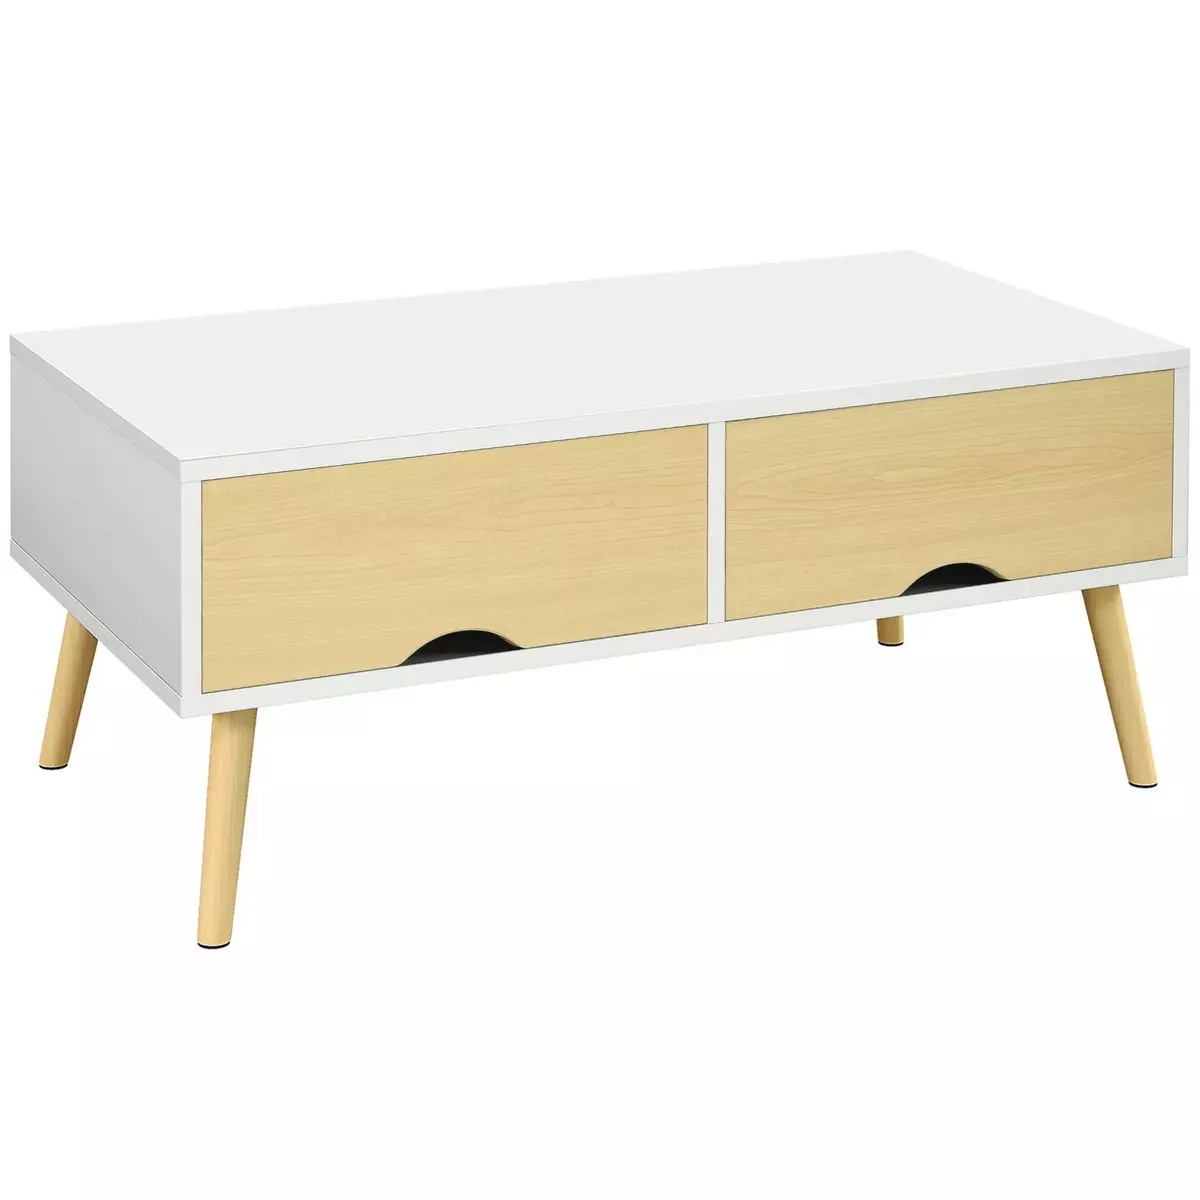 HOMCOM Table basse rectangulaire design scandinave 2 tiroirs coulissants grande niche piètement bois pin blanc aspect bois clair